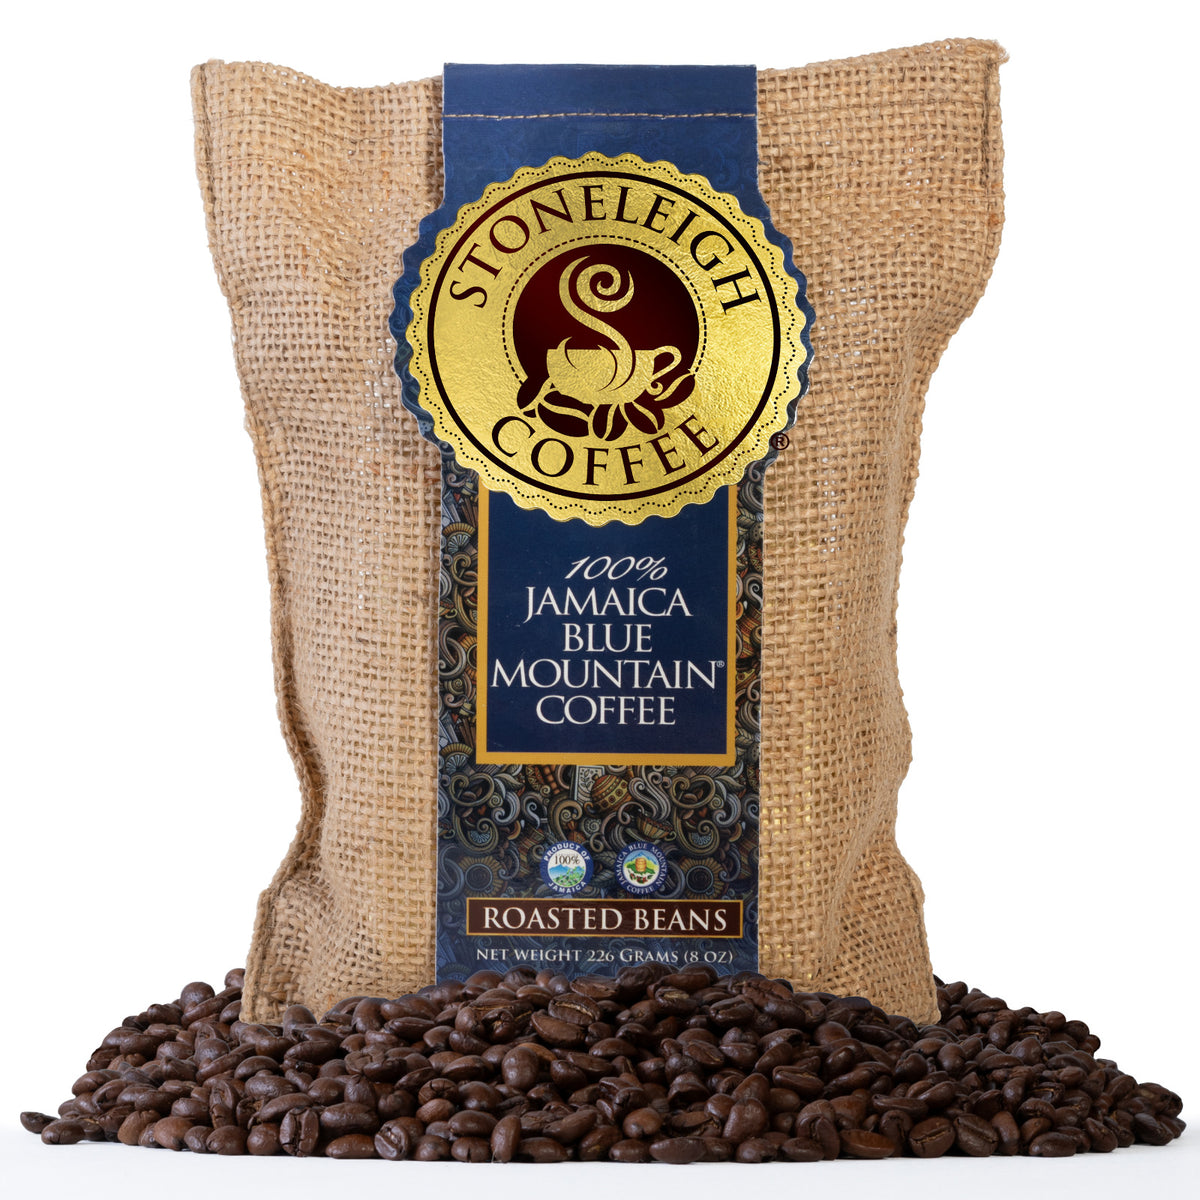 Stoneleigh 100% Jamaica Blue Mountain Coffee Whole Beans 8oz